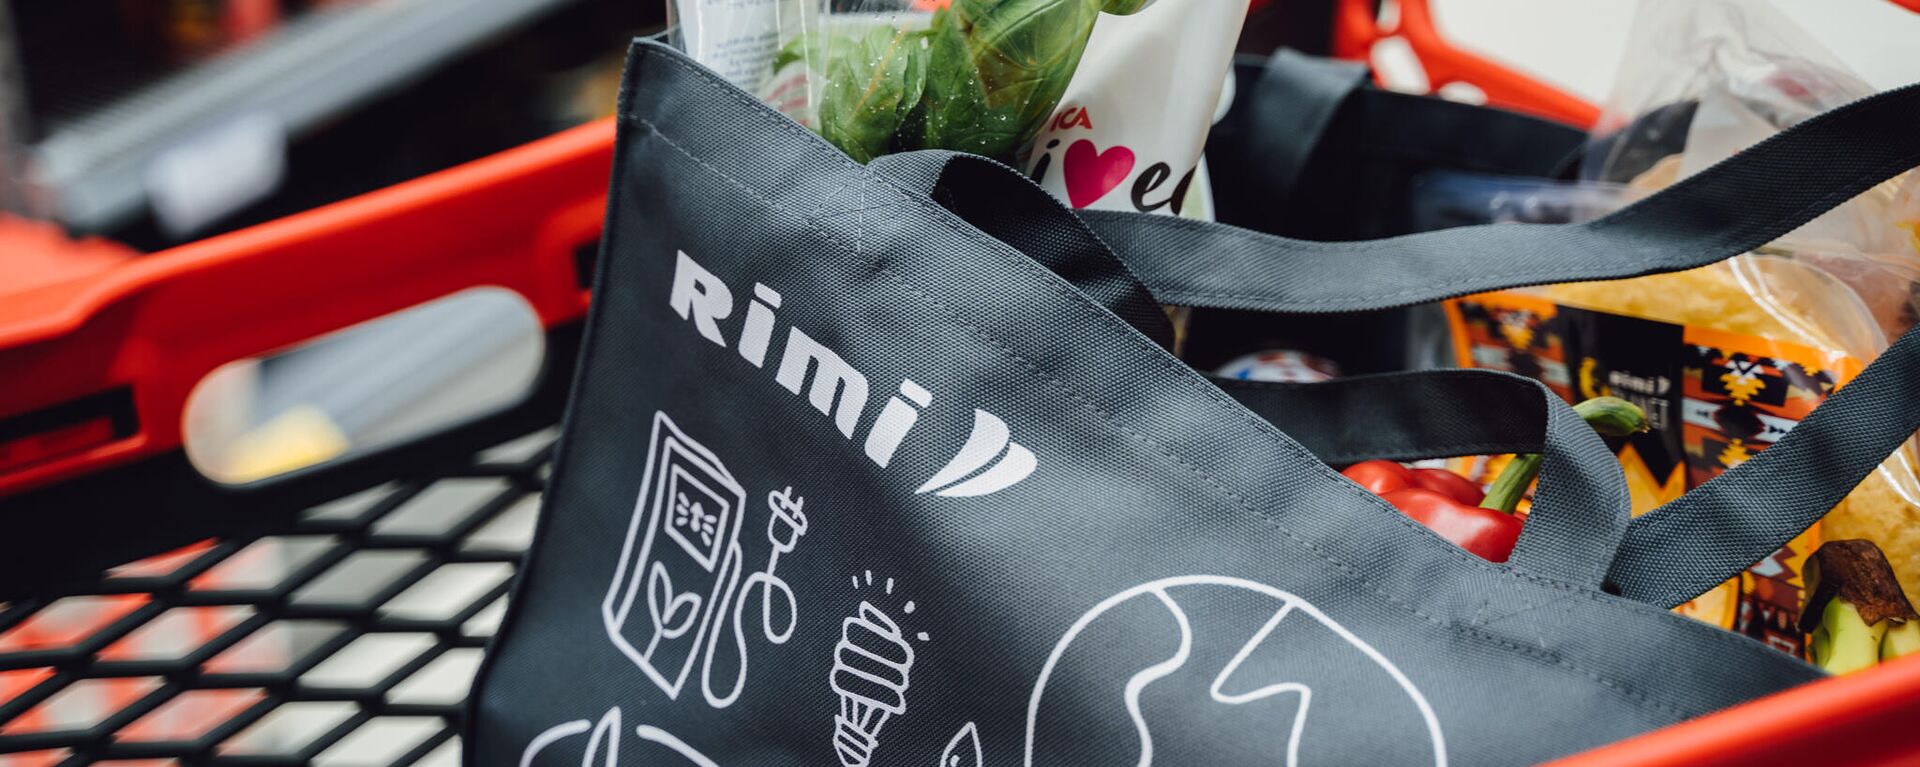 Логотип сети супермаркетов Rimi на продуктовой сумке, архивное фото - Sputnik Литва, 1920, 18.11.2021